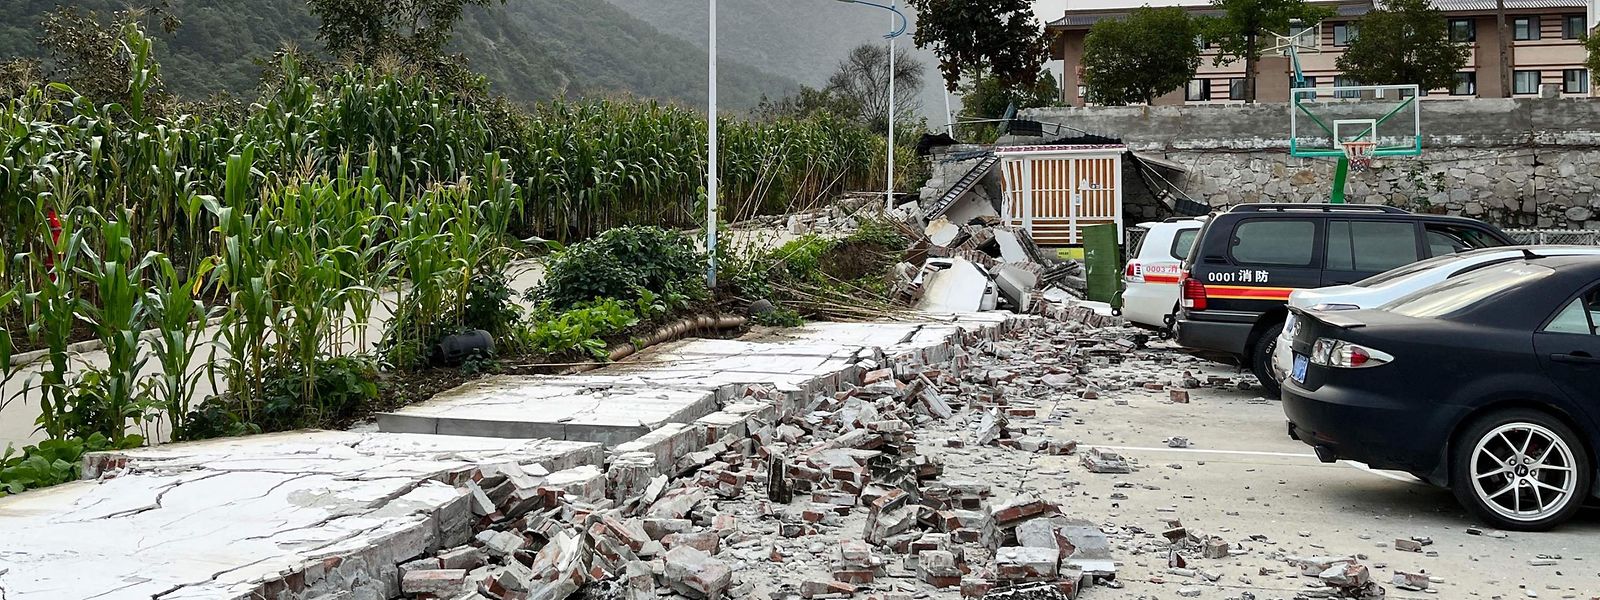 A destruição causada pelo terramoto em Hailuogou, no sudoeste da província chinesa de Sichuan, esta segunda-feira